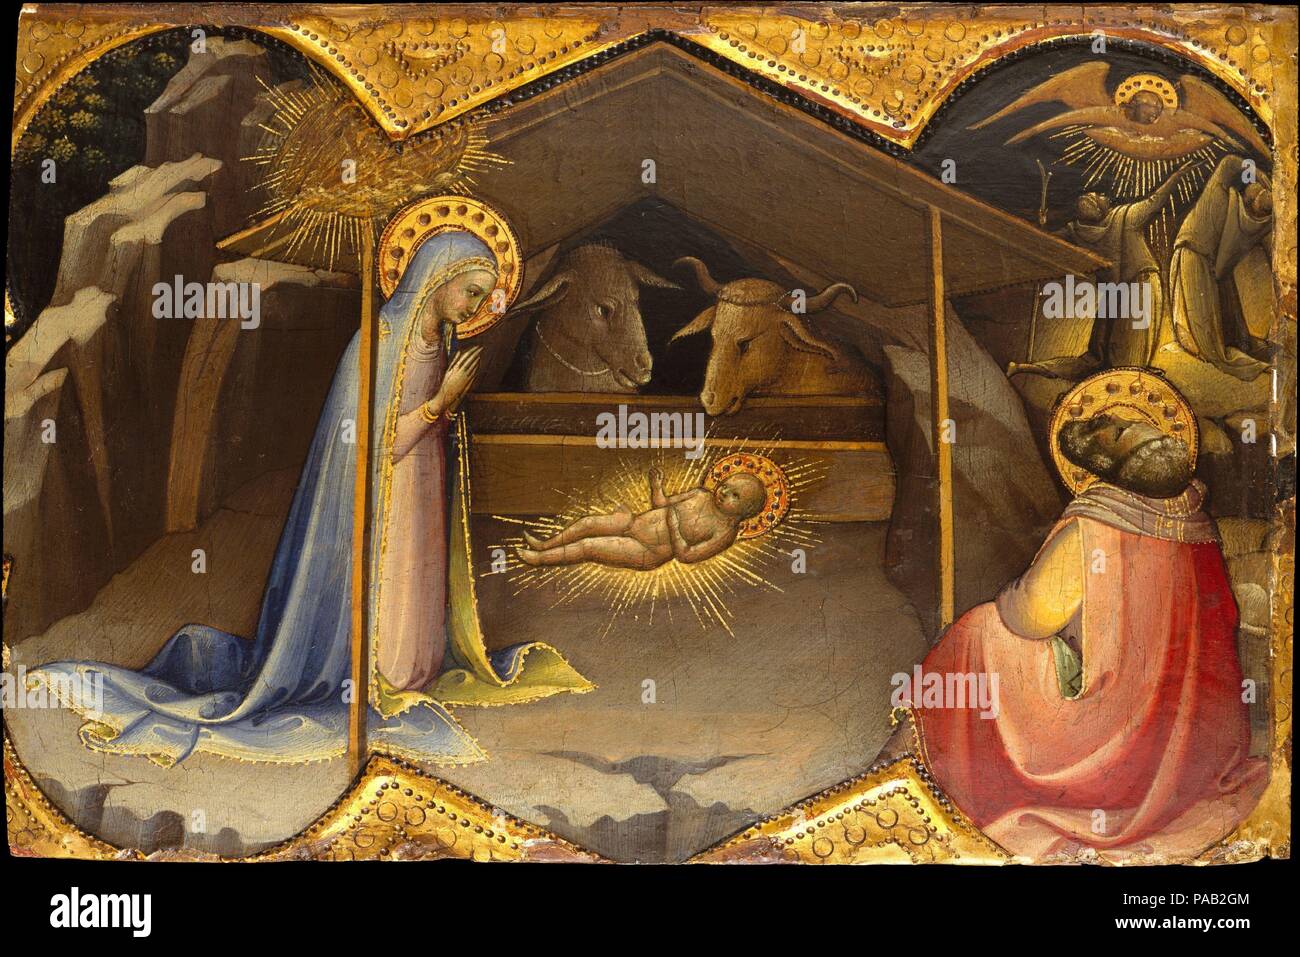 La nativité. Artiste : Lorenzo Monaco (Piero di Giovanni) (Italien, Florence ( ?) ca. 1370-1425 Florence ( ?)). Dimensions : 8 3/4 x 12 1/4 in. (22,2 x 31,1 cm). Date : ca. 1406-10. Lorenzo Monaco, le premier peintre à Florence au début du xve siècle, a été actif en tant que peintre d'enluminures, fresques et tableaux de bord. Un important promoteur du style gothique international, son style se caractérise par des couleurs lumineuses et gracieux, rythmique, des lignes fluides. Dans cette exquise représentation de la Nativité, les éléments de composition sont brillamment adapté à la quatre champ, Banque D'Images